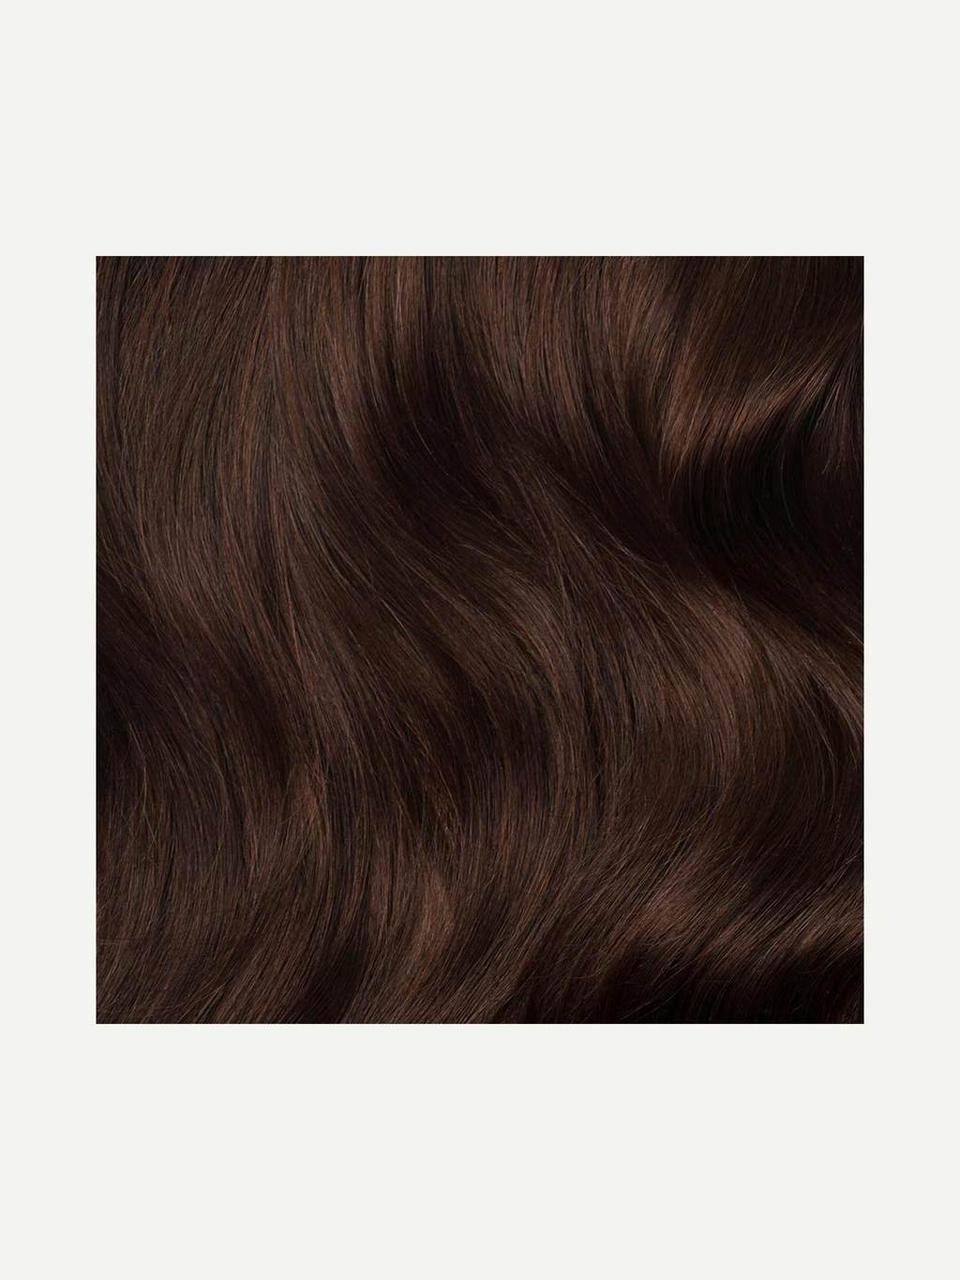 Волосся для нарощування Luxy Hair Chocolate Brown 4 натуральне  120 грамм (в упаковке)